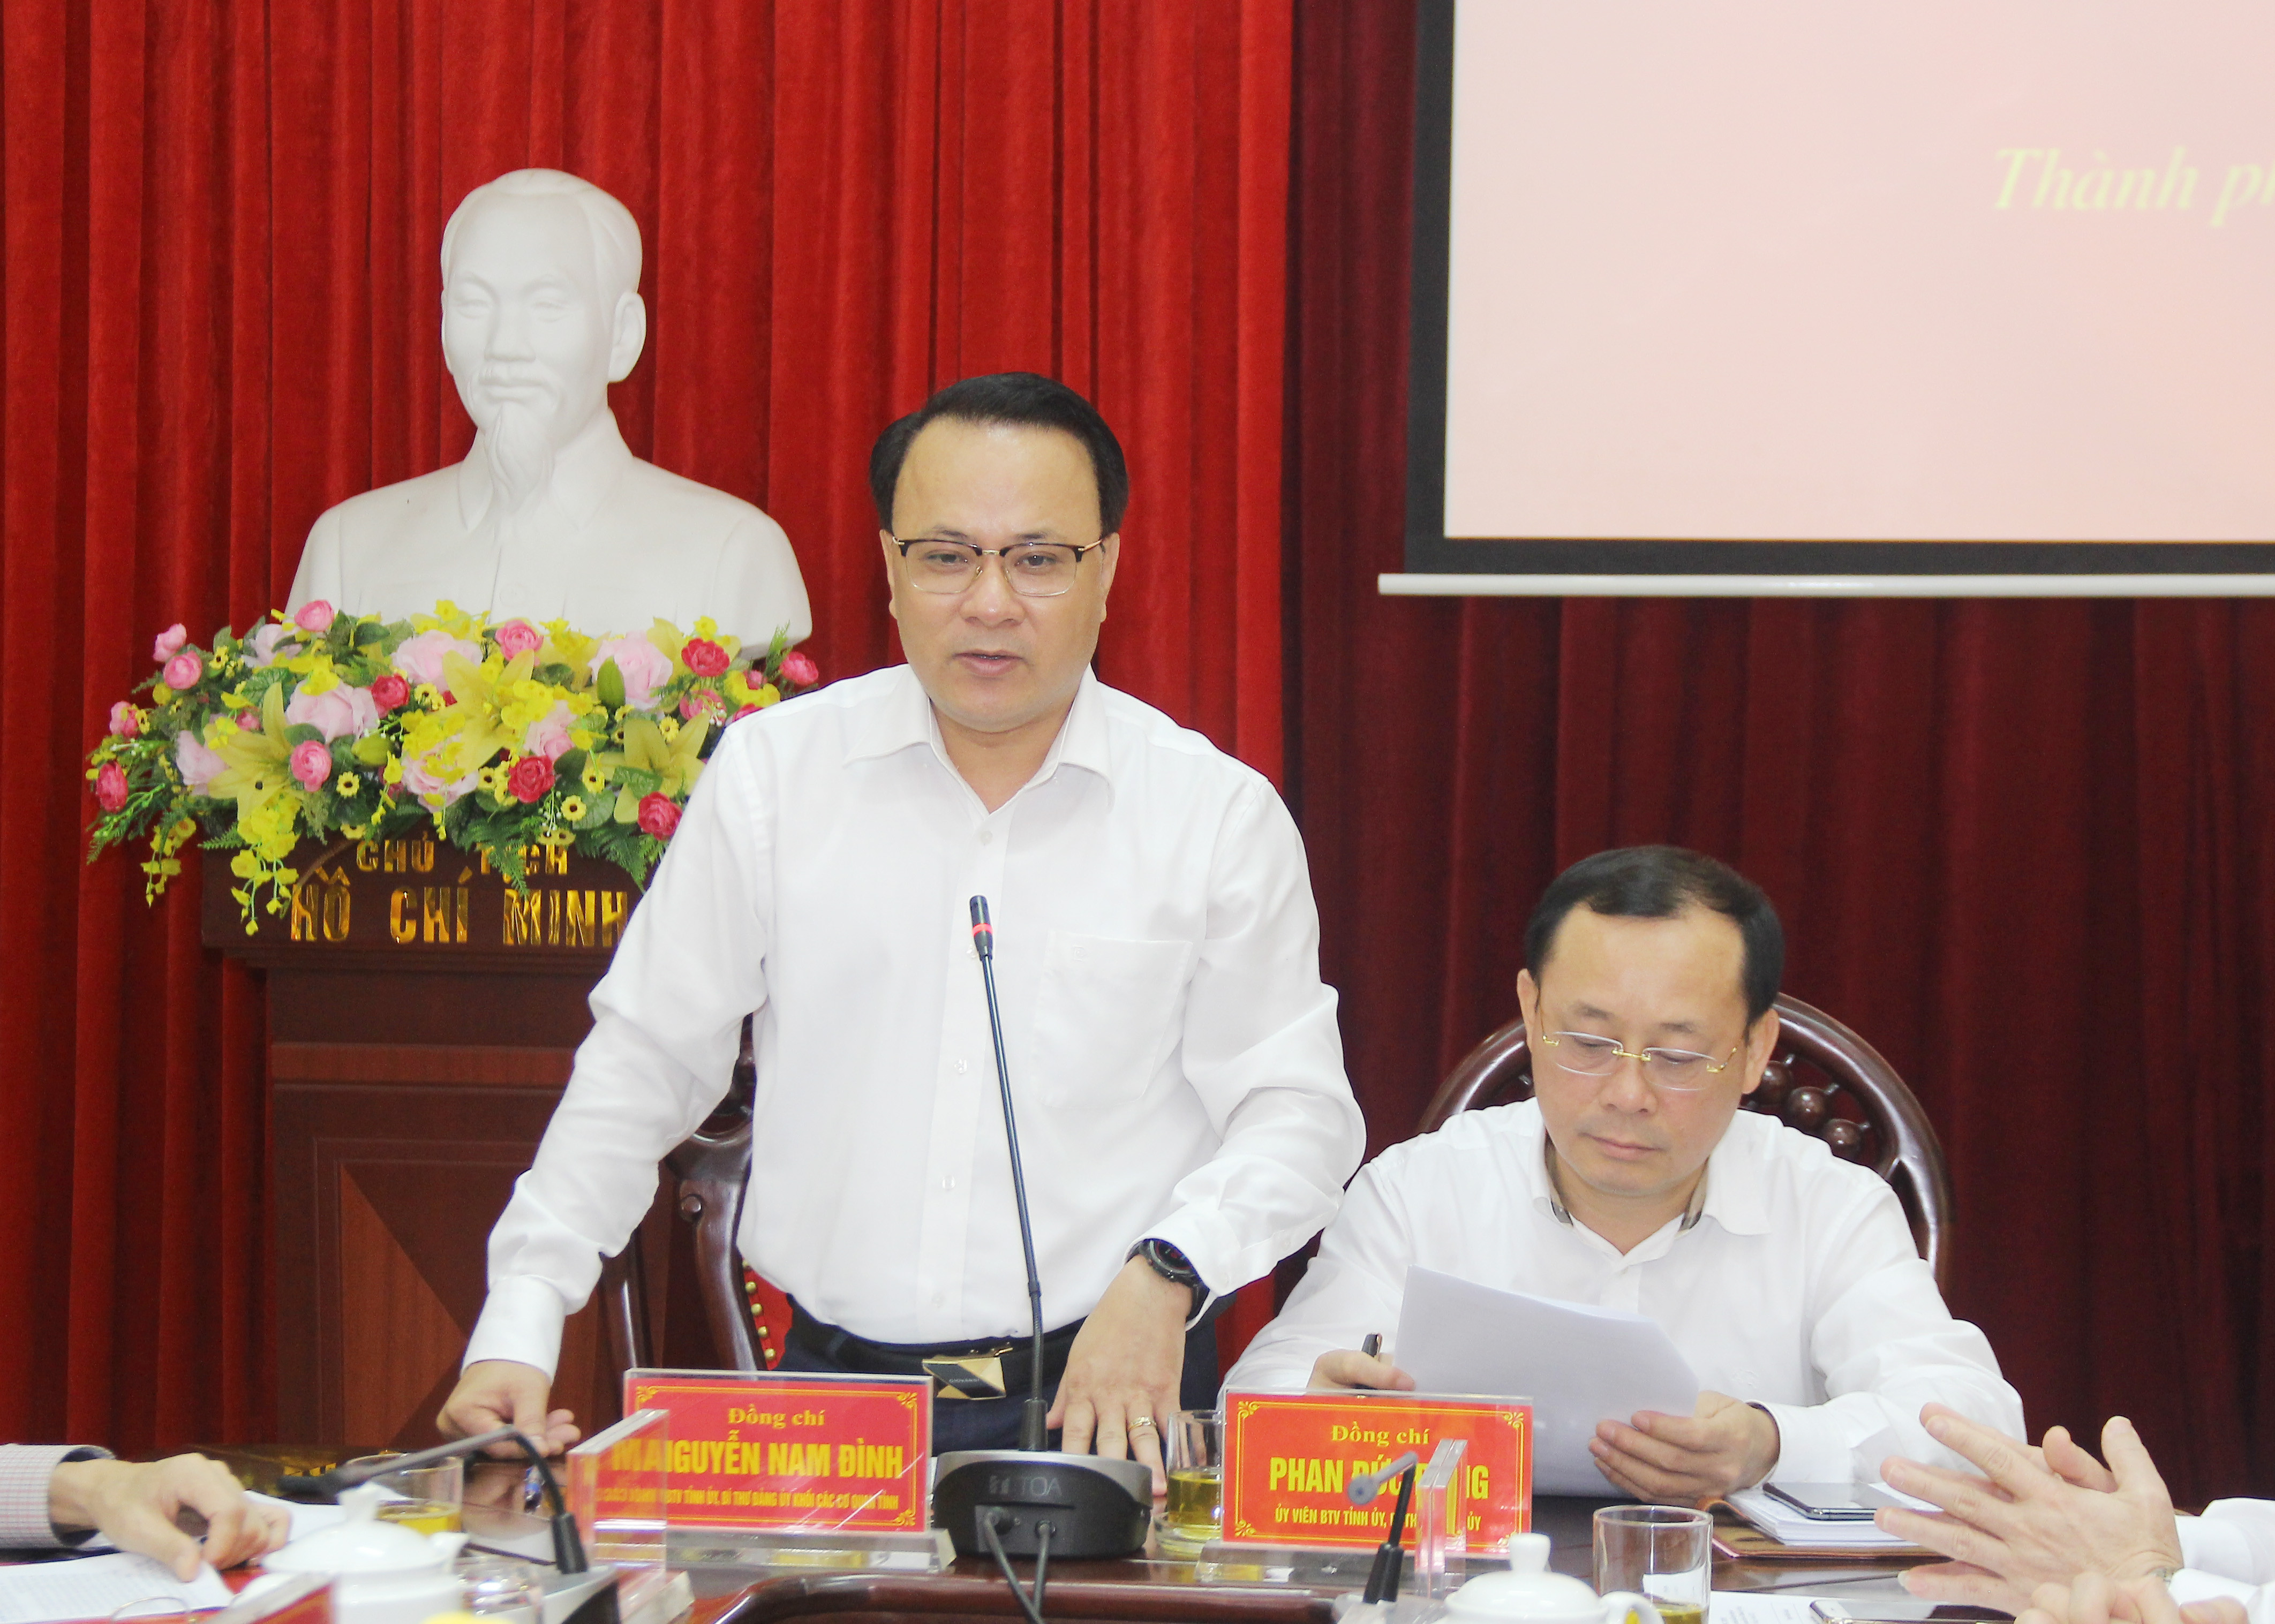 Đồng chí Nguyễn Nam Đình - Ủy viên Ban Thường vụ Tỉnh ủy. Ảnh: Mai Hoa